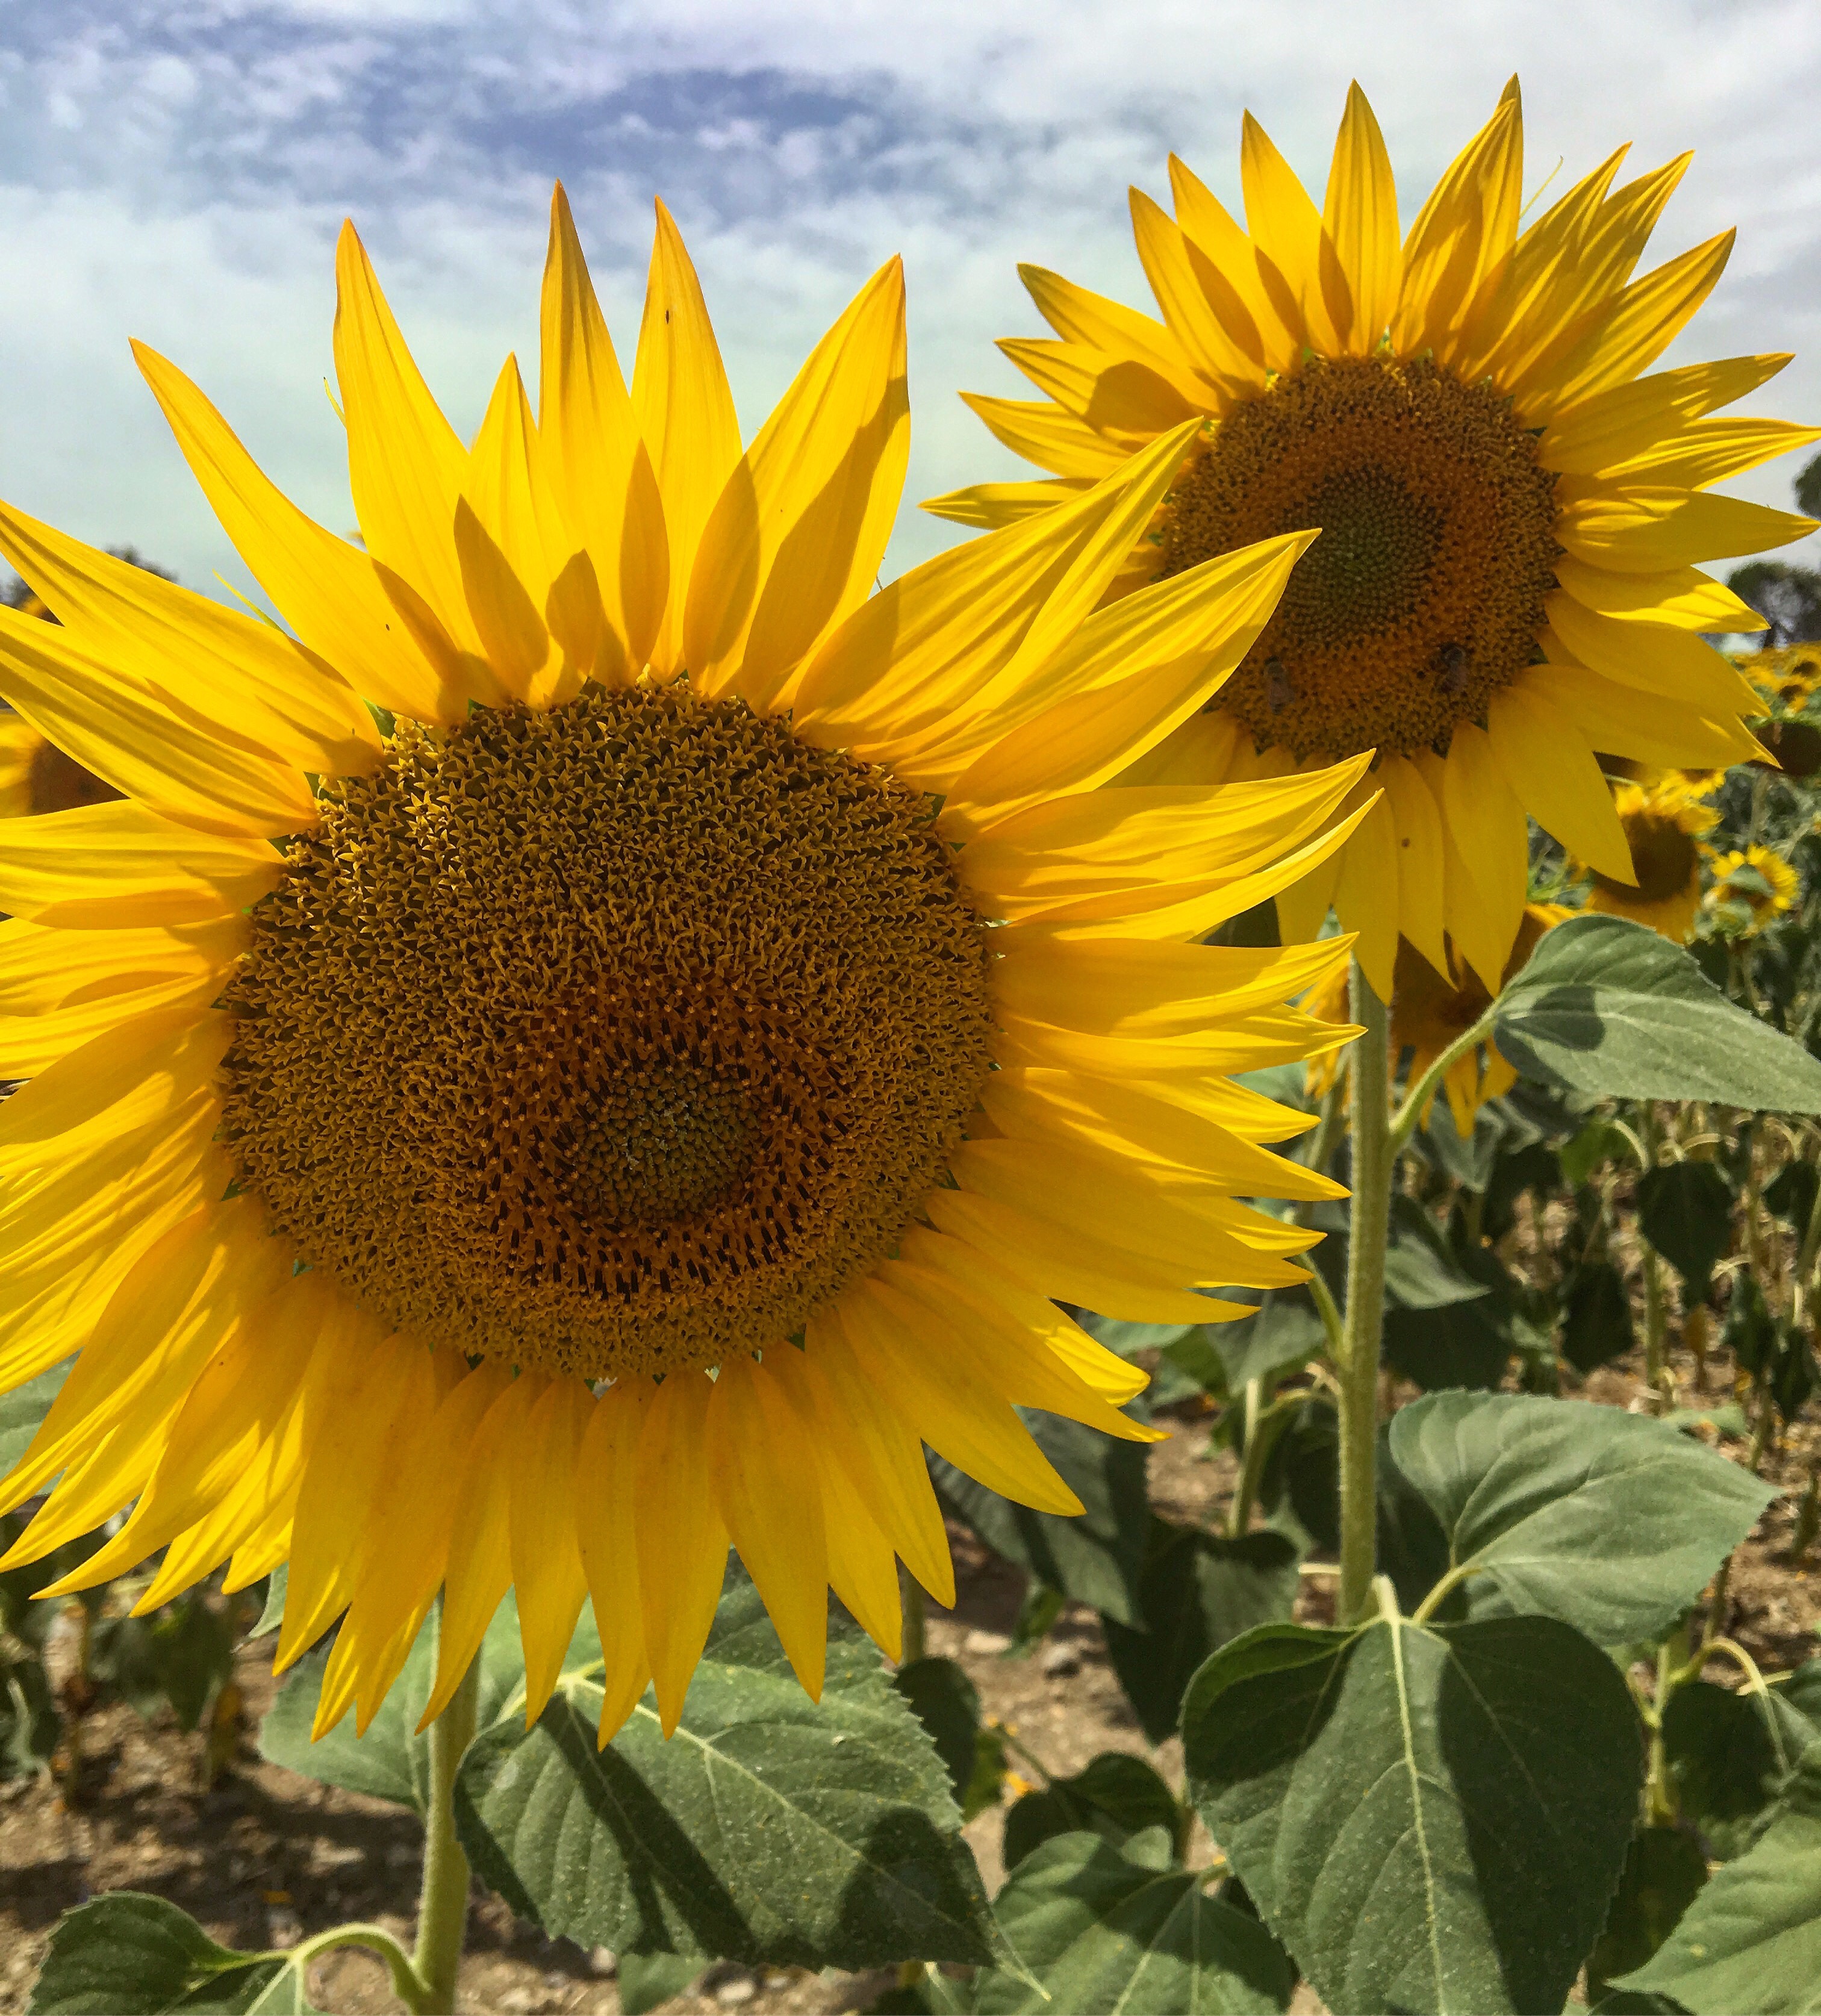 Rustic Toscana sunflowers